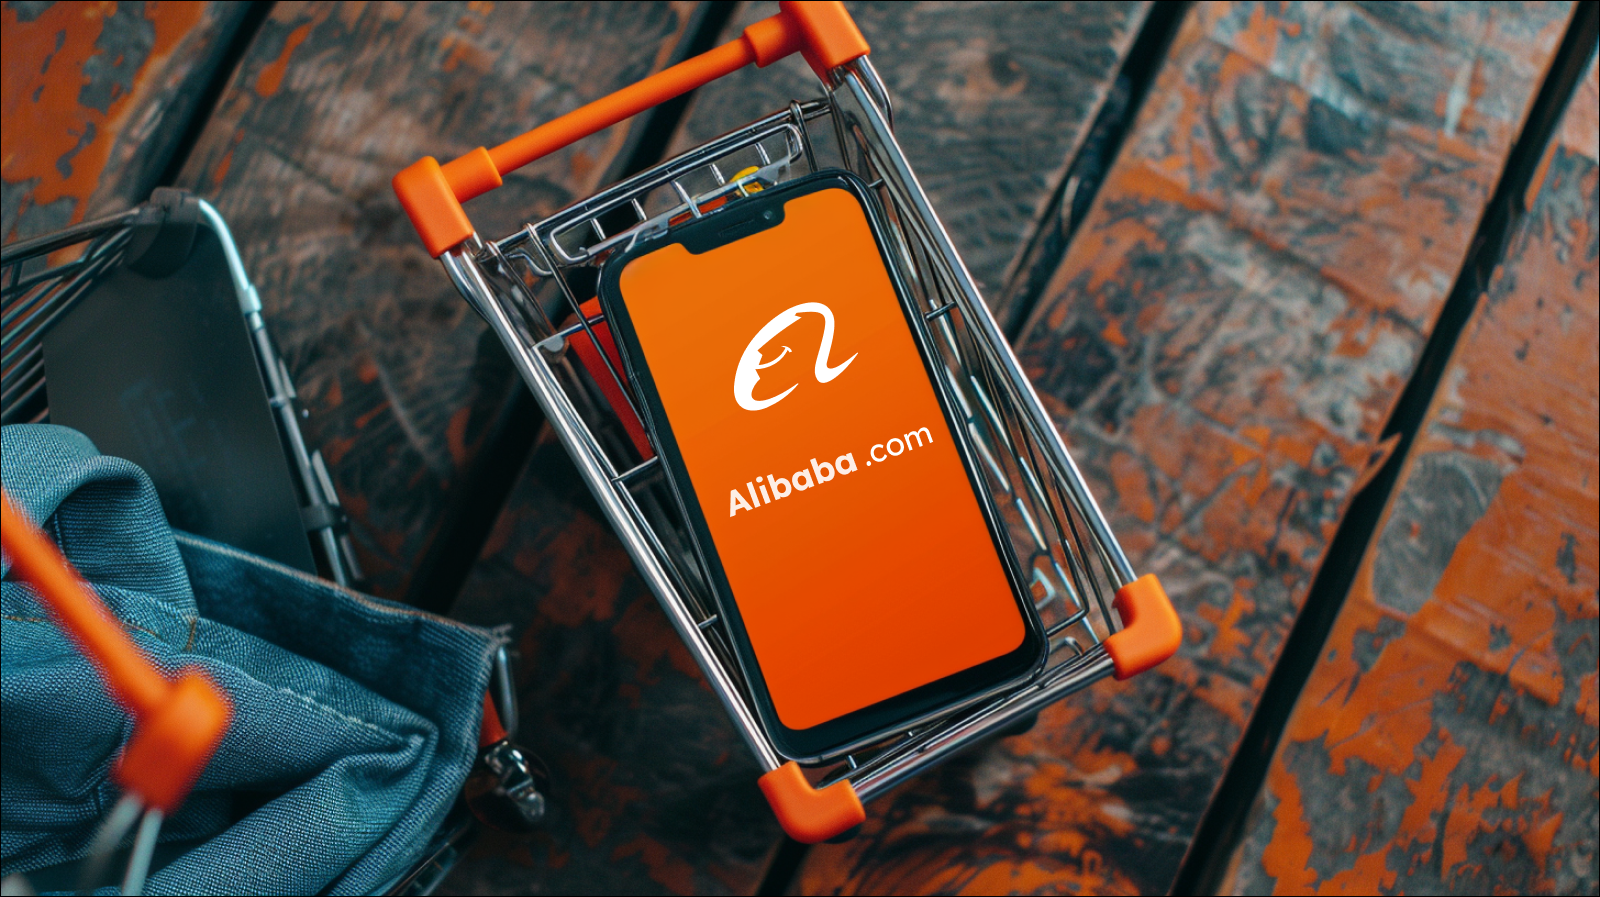 Ein Smartphone mit dem Bildschirm, der das Alibaba-Logo zeigt, liegt in einem Miniatur-Einkaufswagen